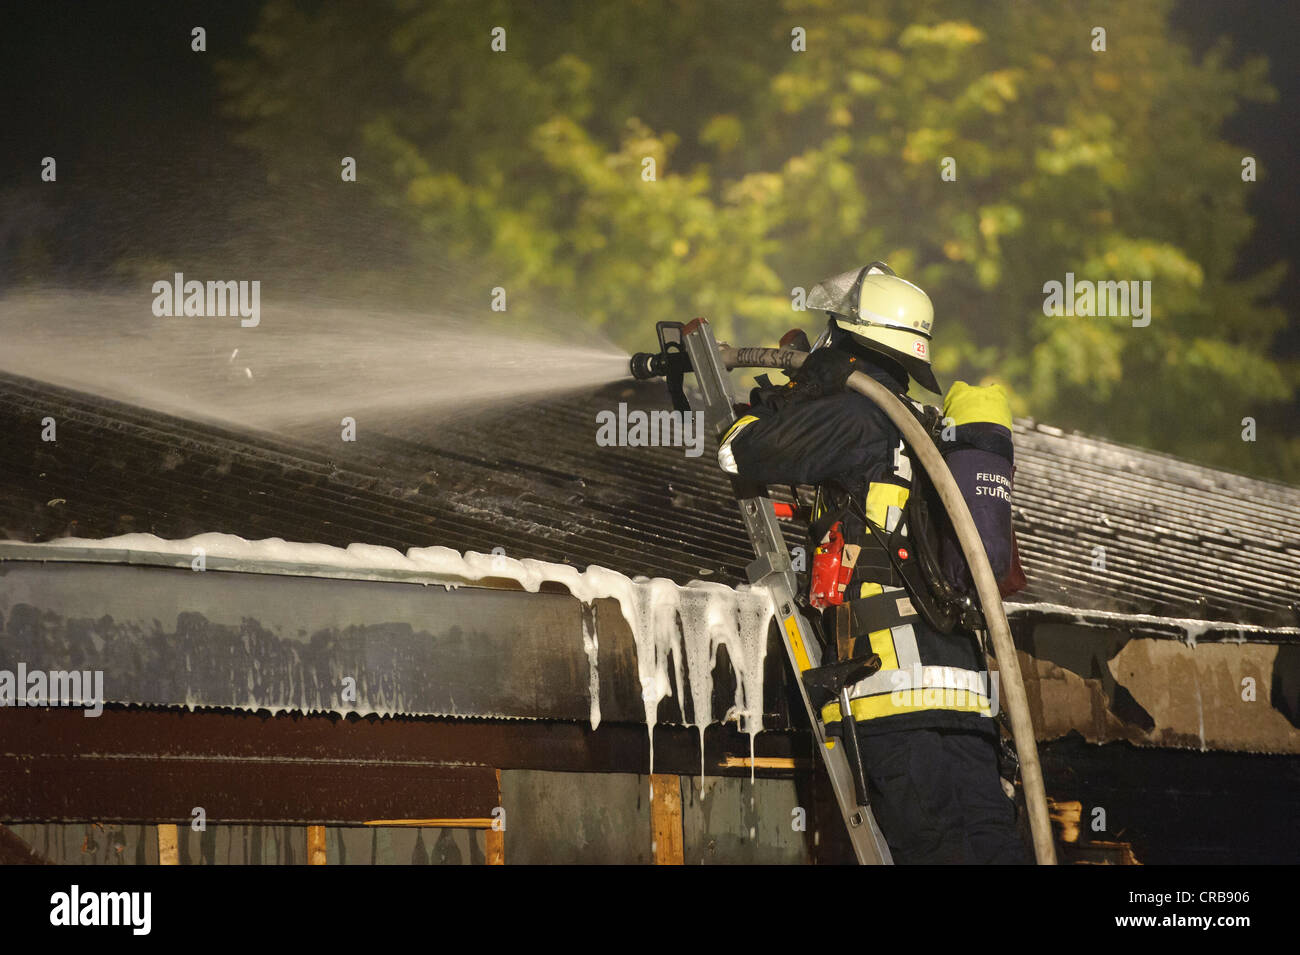 Pompier du service d'incendie au cours d'une opération de lutte contre l'incendie, Stuttgart, Bade-Wurtemberg, Allemagne, Europe Banque D'Images